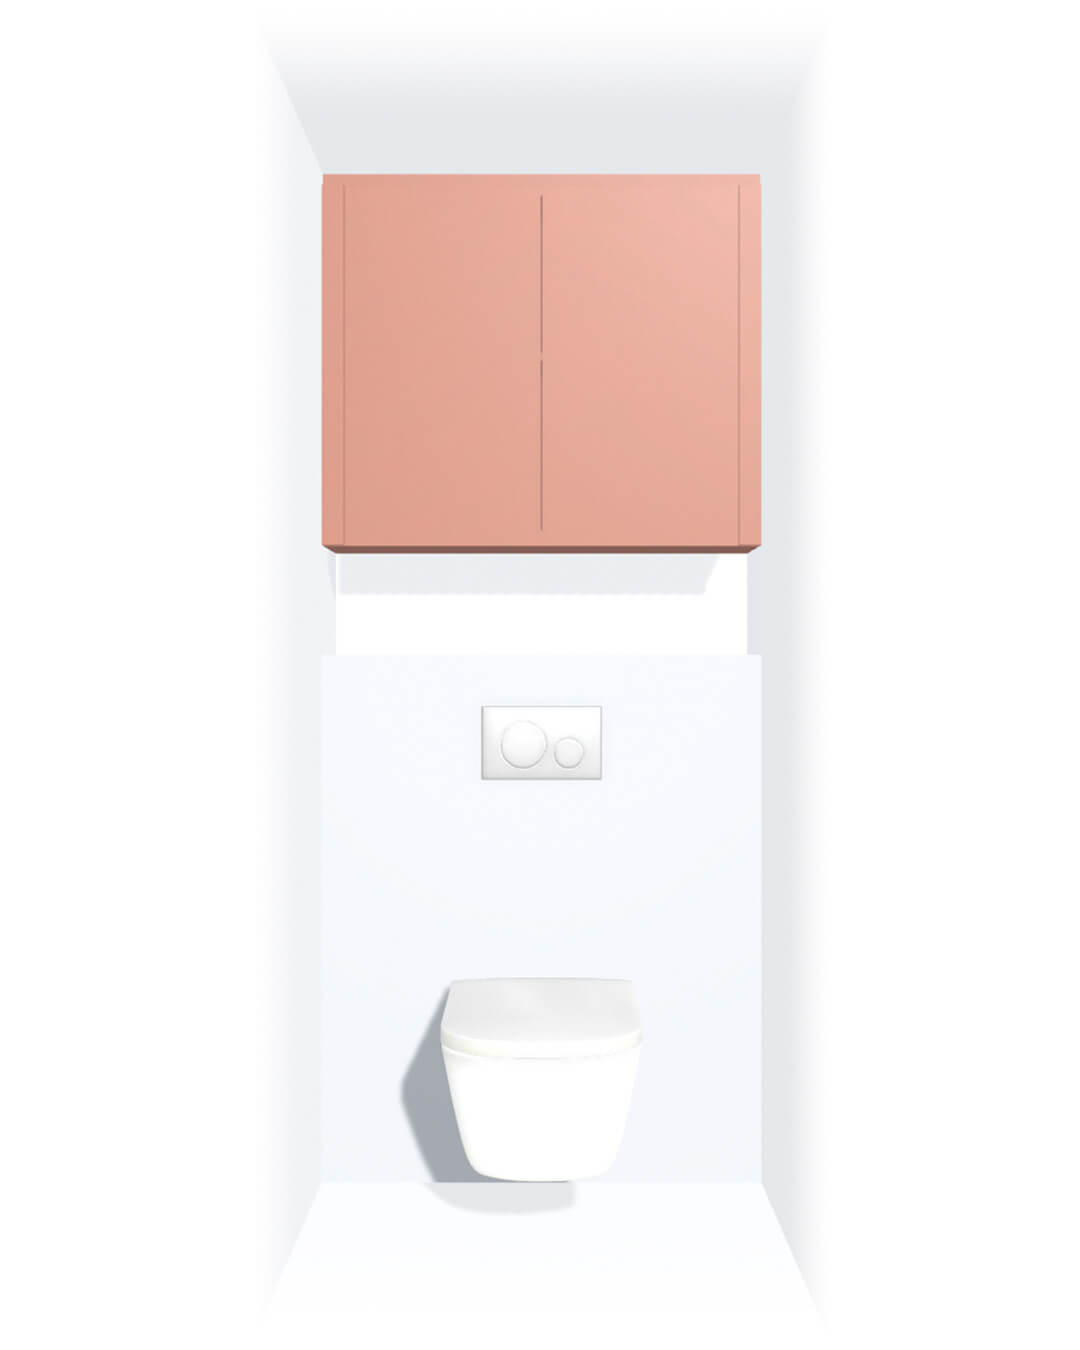 Meuble de rangement sur mesure suspendu au-dessus des toilettes, dans une couleur rose